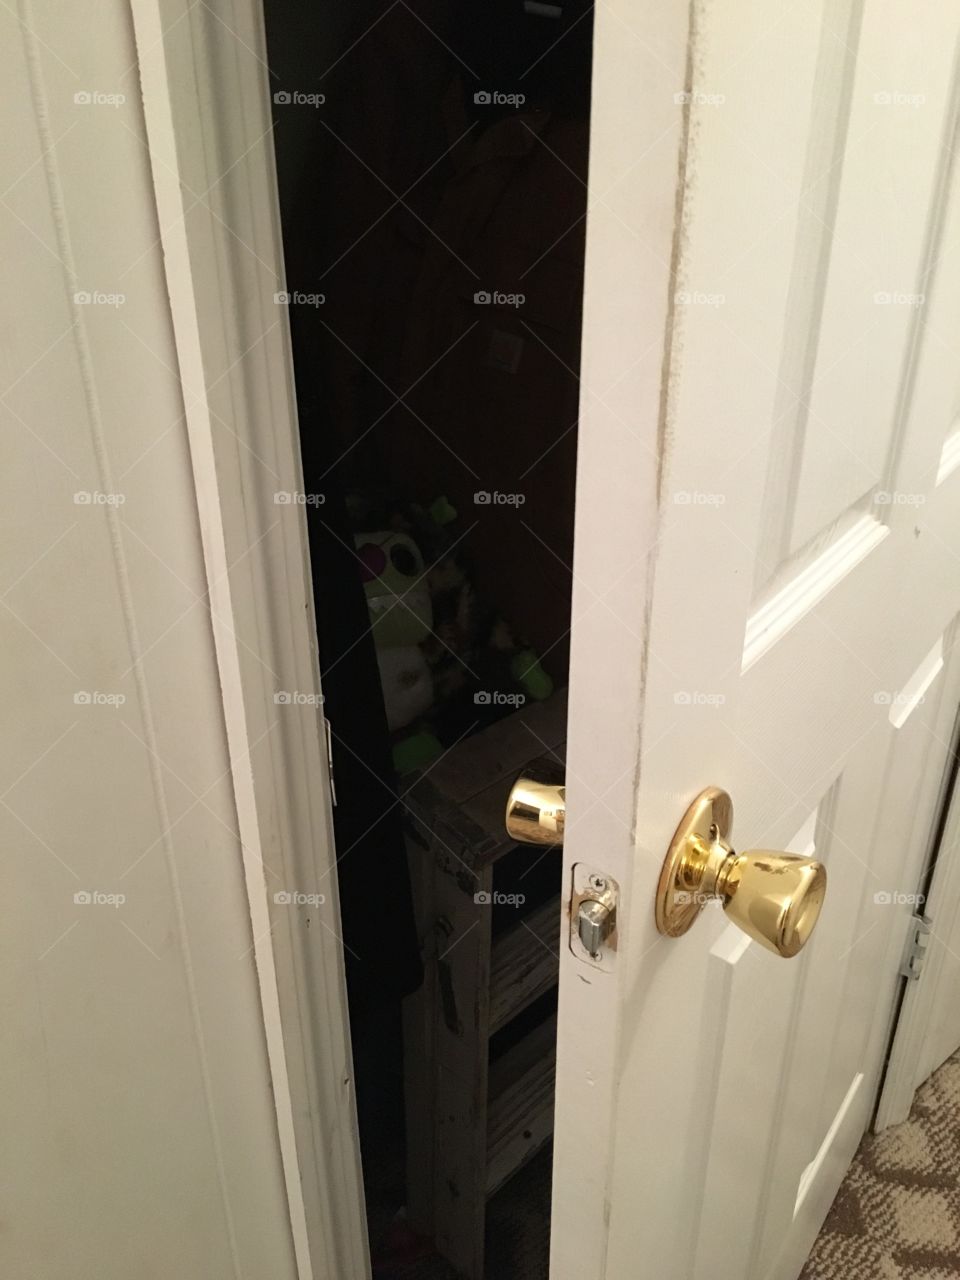 Why is this closet door open? 